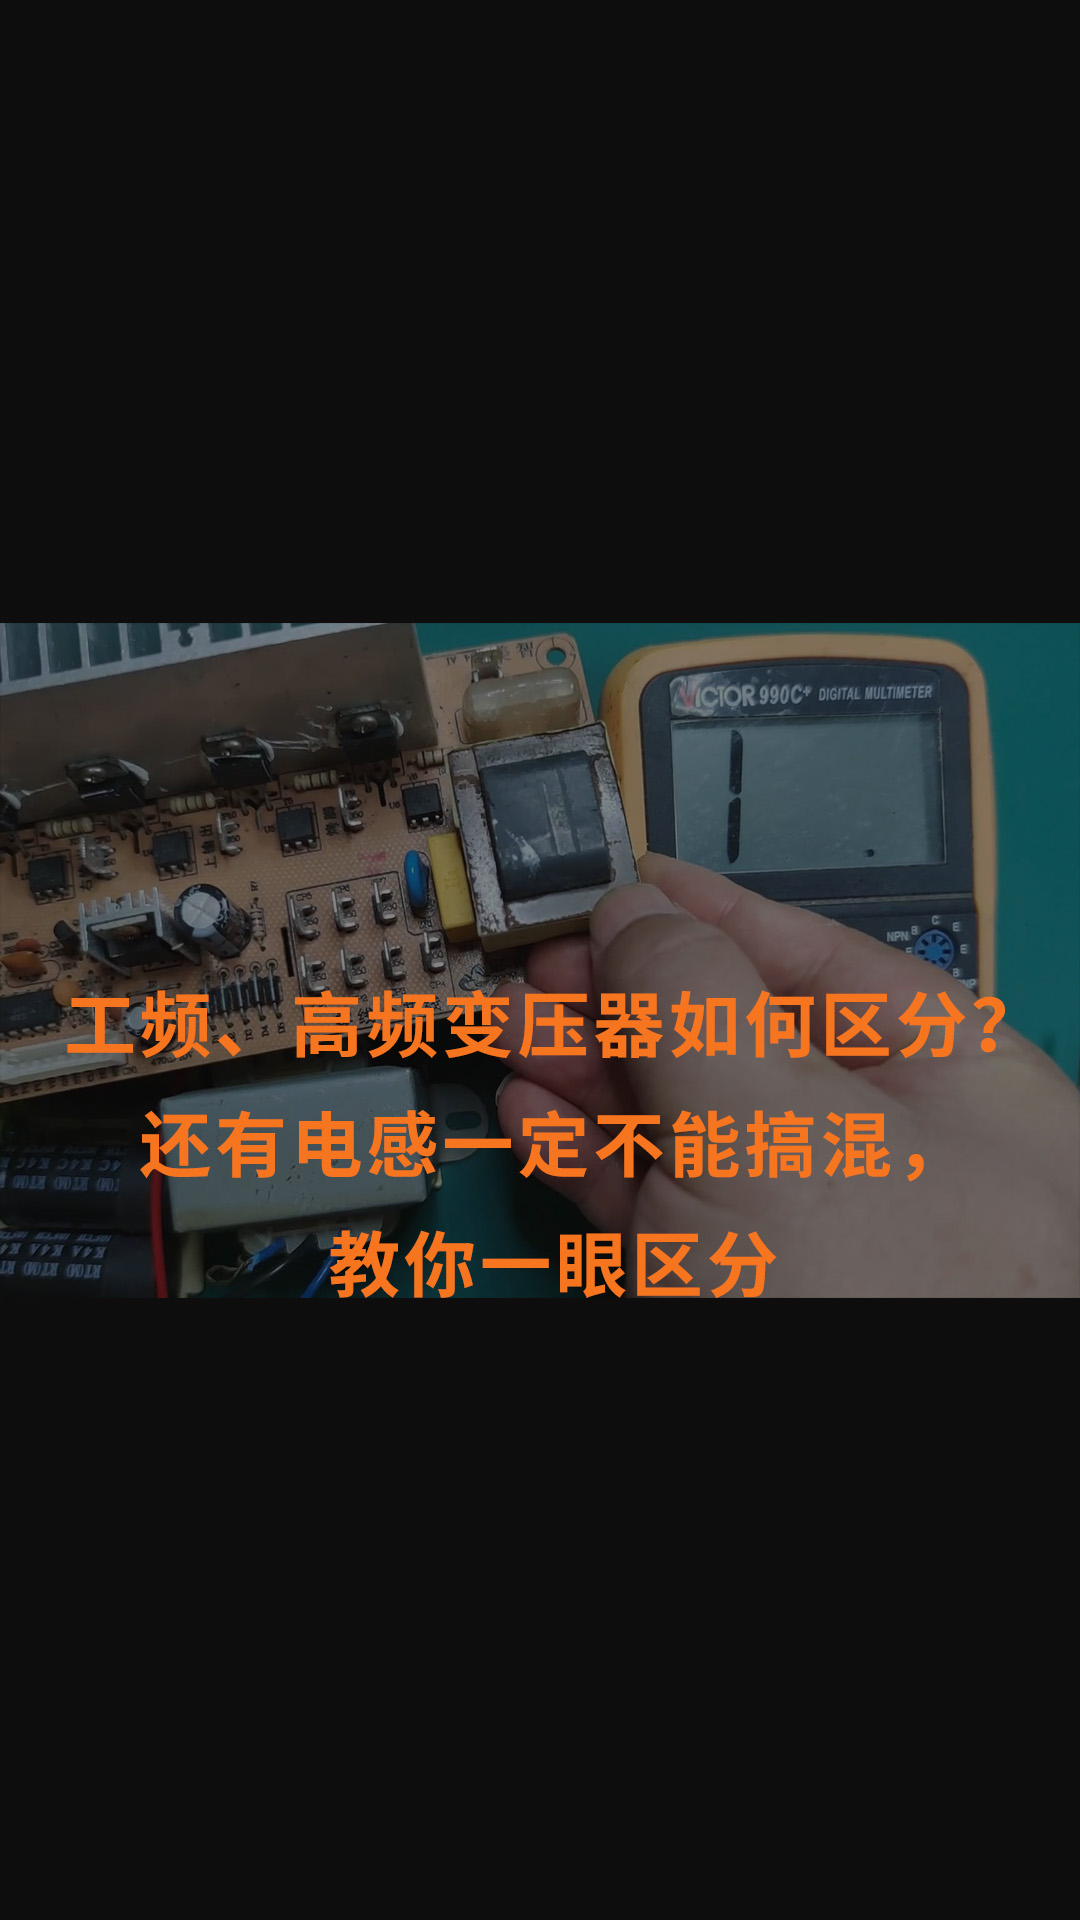 工频、高频变压器如何区分？还有电感一定不能搞混，教你一眼区分